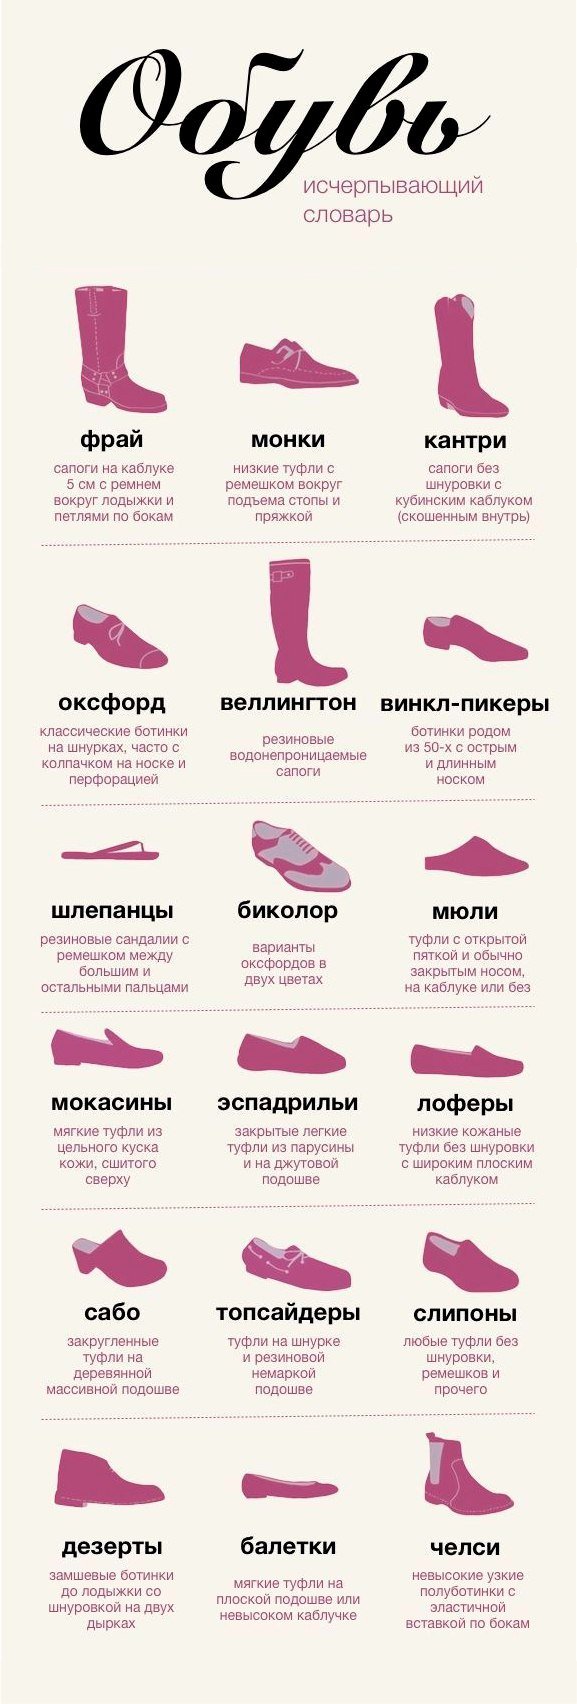 Название обуви. Обувь название моделей. Наименование обуви женской. Женская обувь названия моделей.